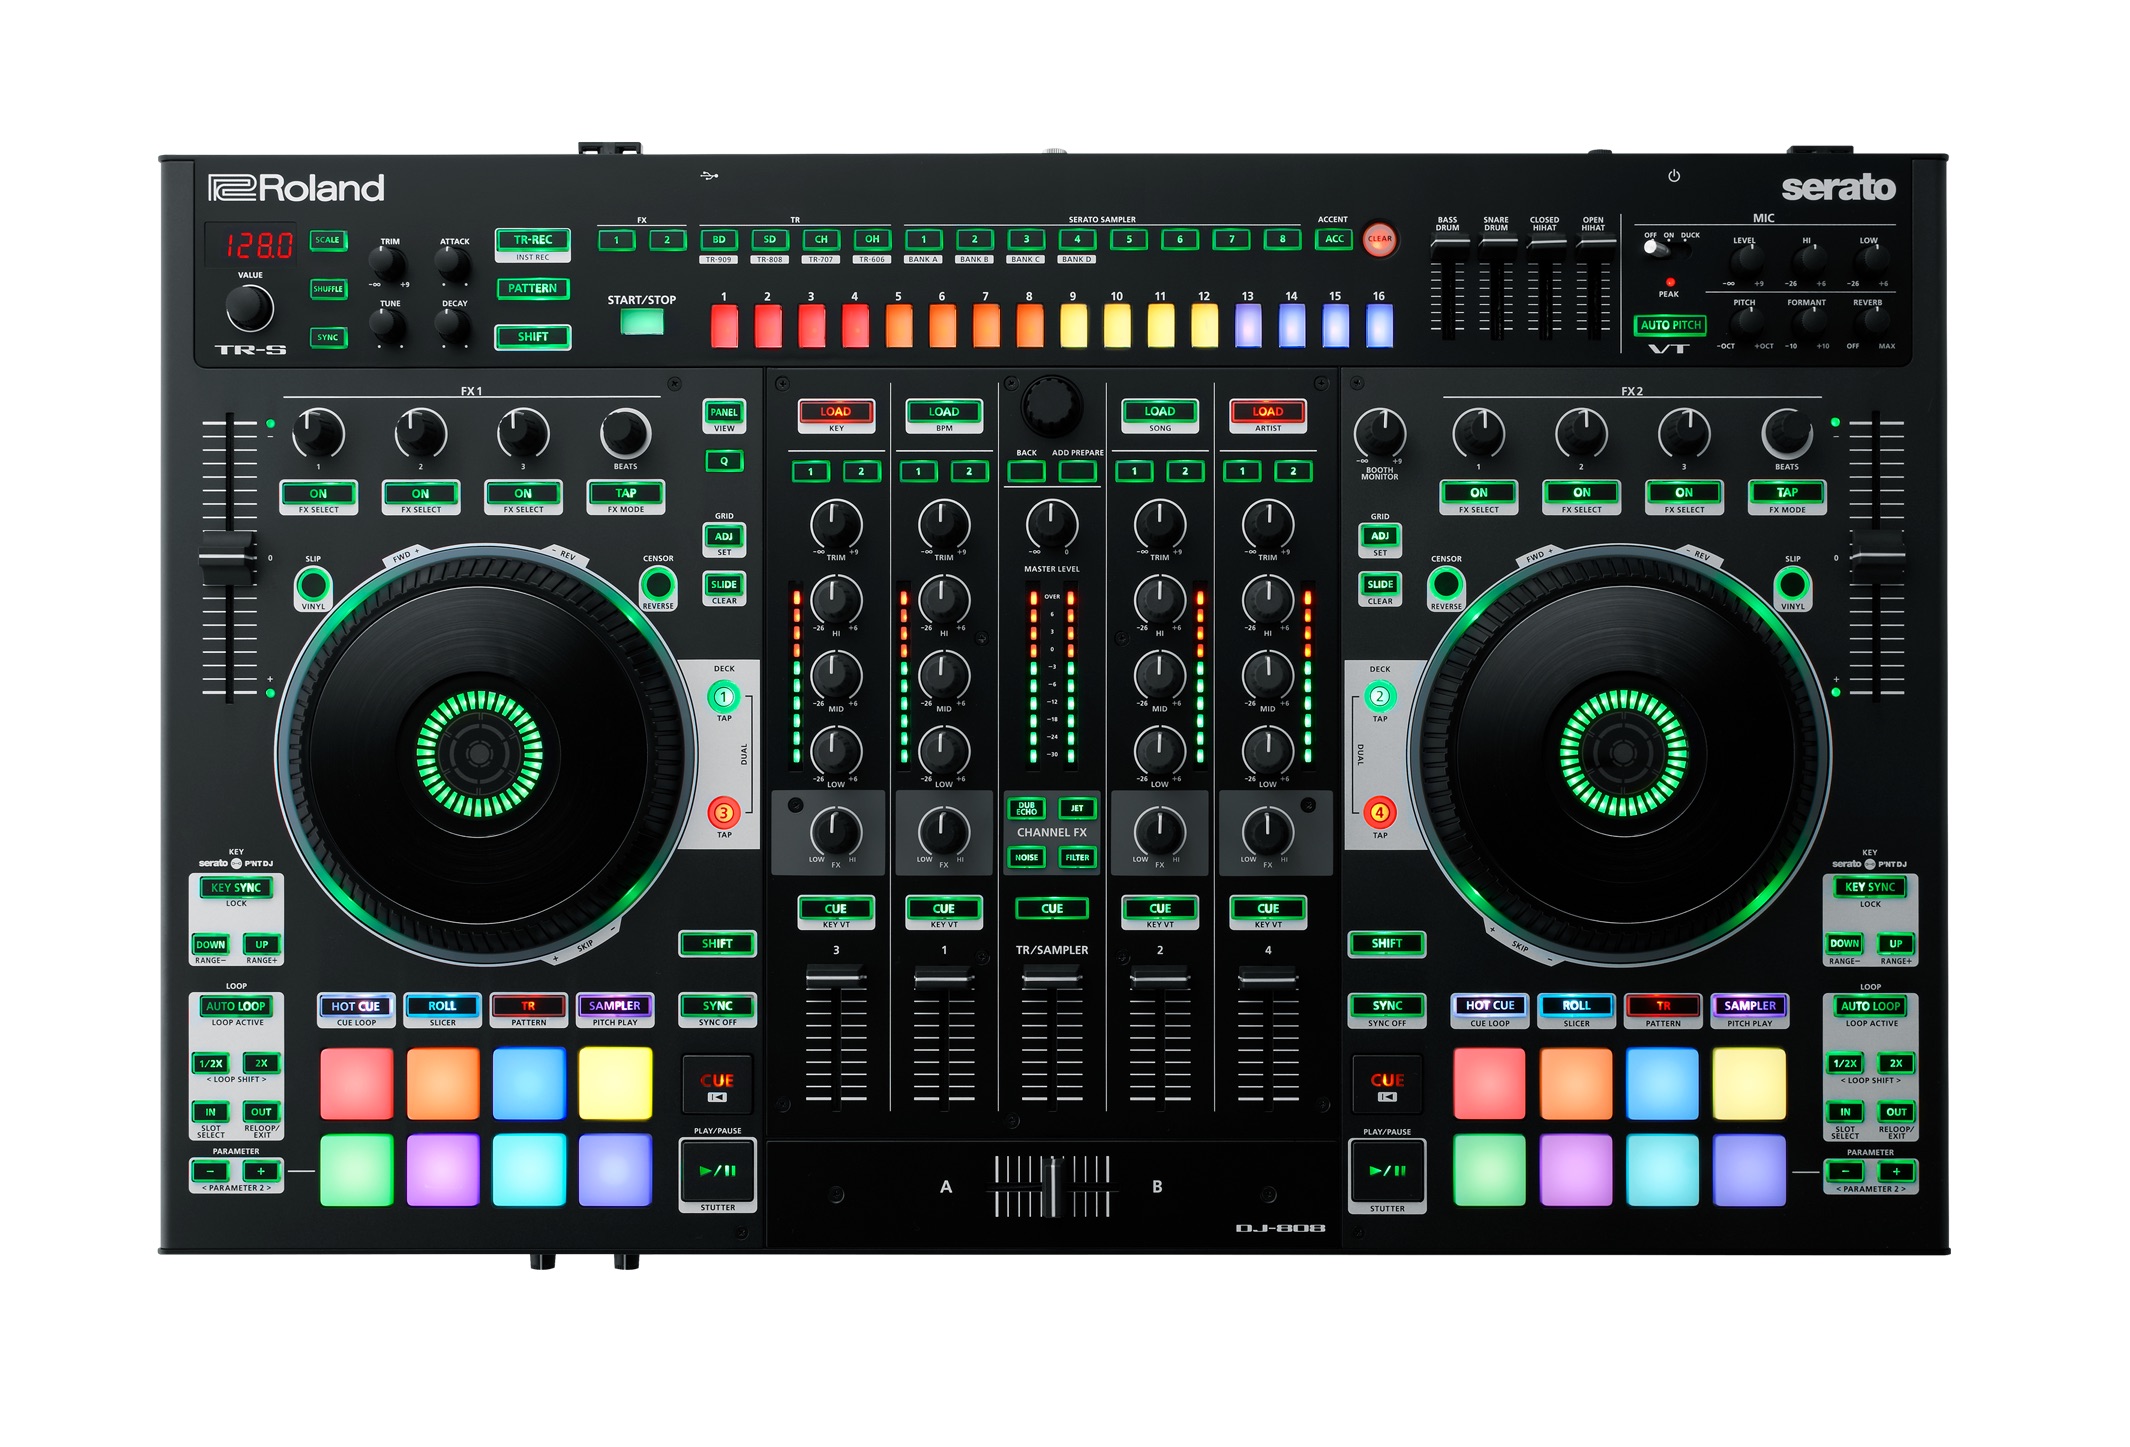 Nuevo e impresionante controlador Roland DJ 808 compatible con Serato DJ